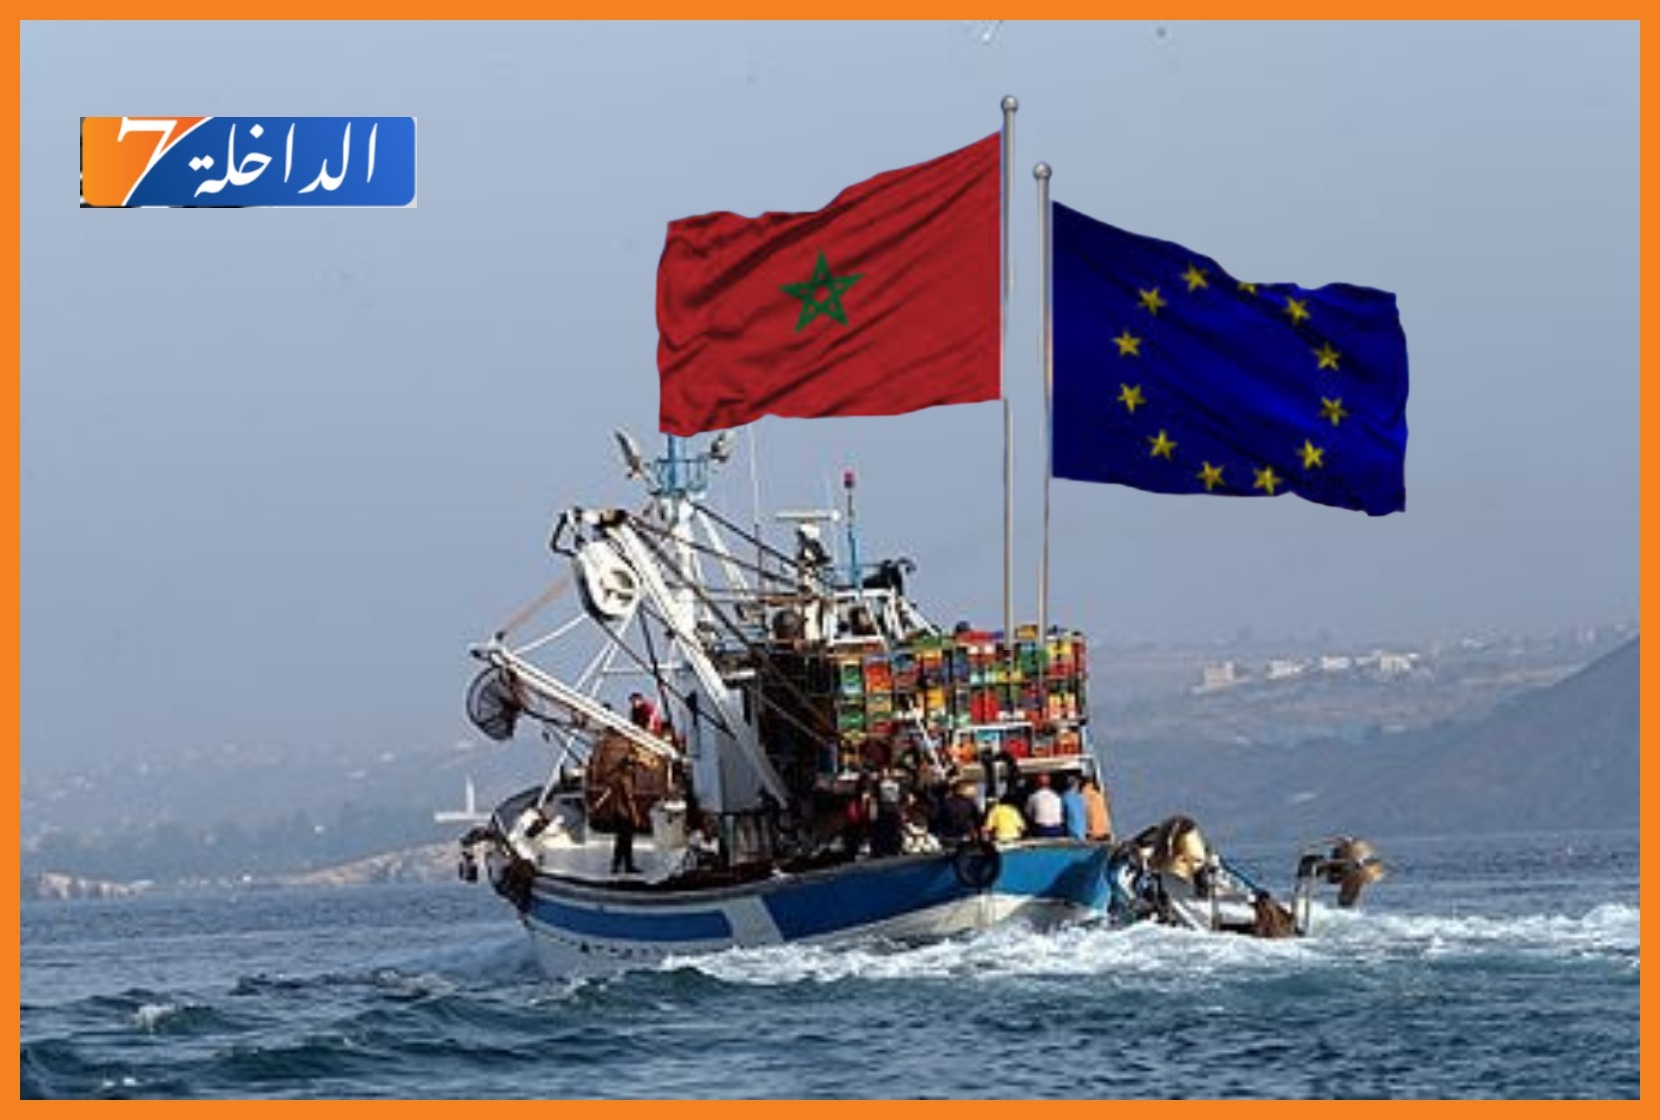 مدريد تبحث مع الرباط عودة سفنها إلى المياه المغربية